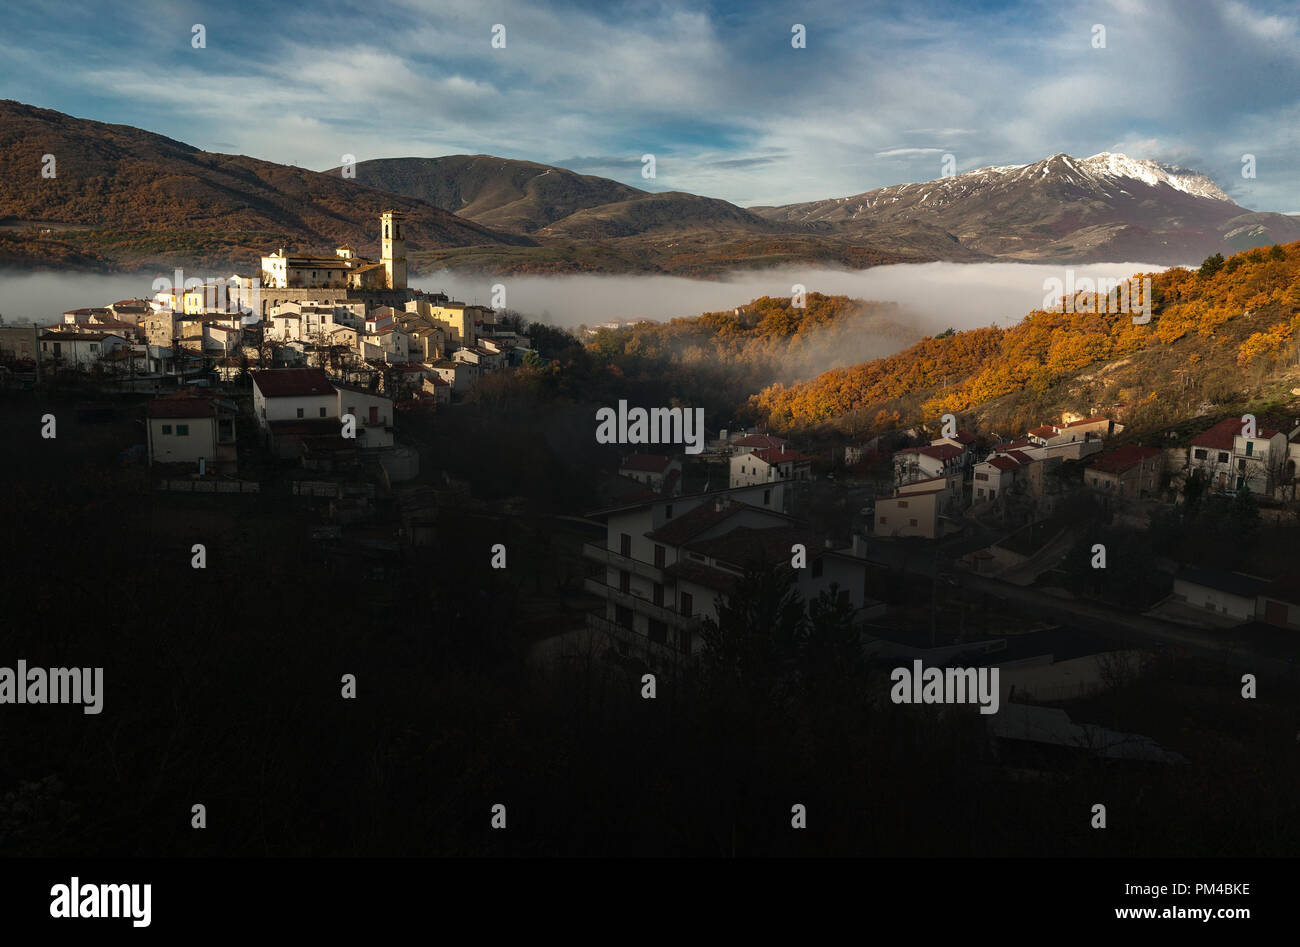 Le nebbie autunnali coprono la valle del subequana. L'antico borgo di Goriano Sicoli è illuminato dalla prima luce dell'alba. Goriano Sicoli, Abruzzo Foto Stock